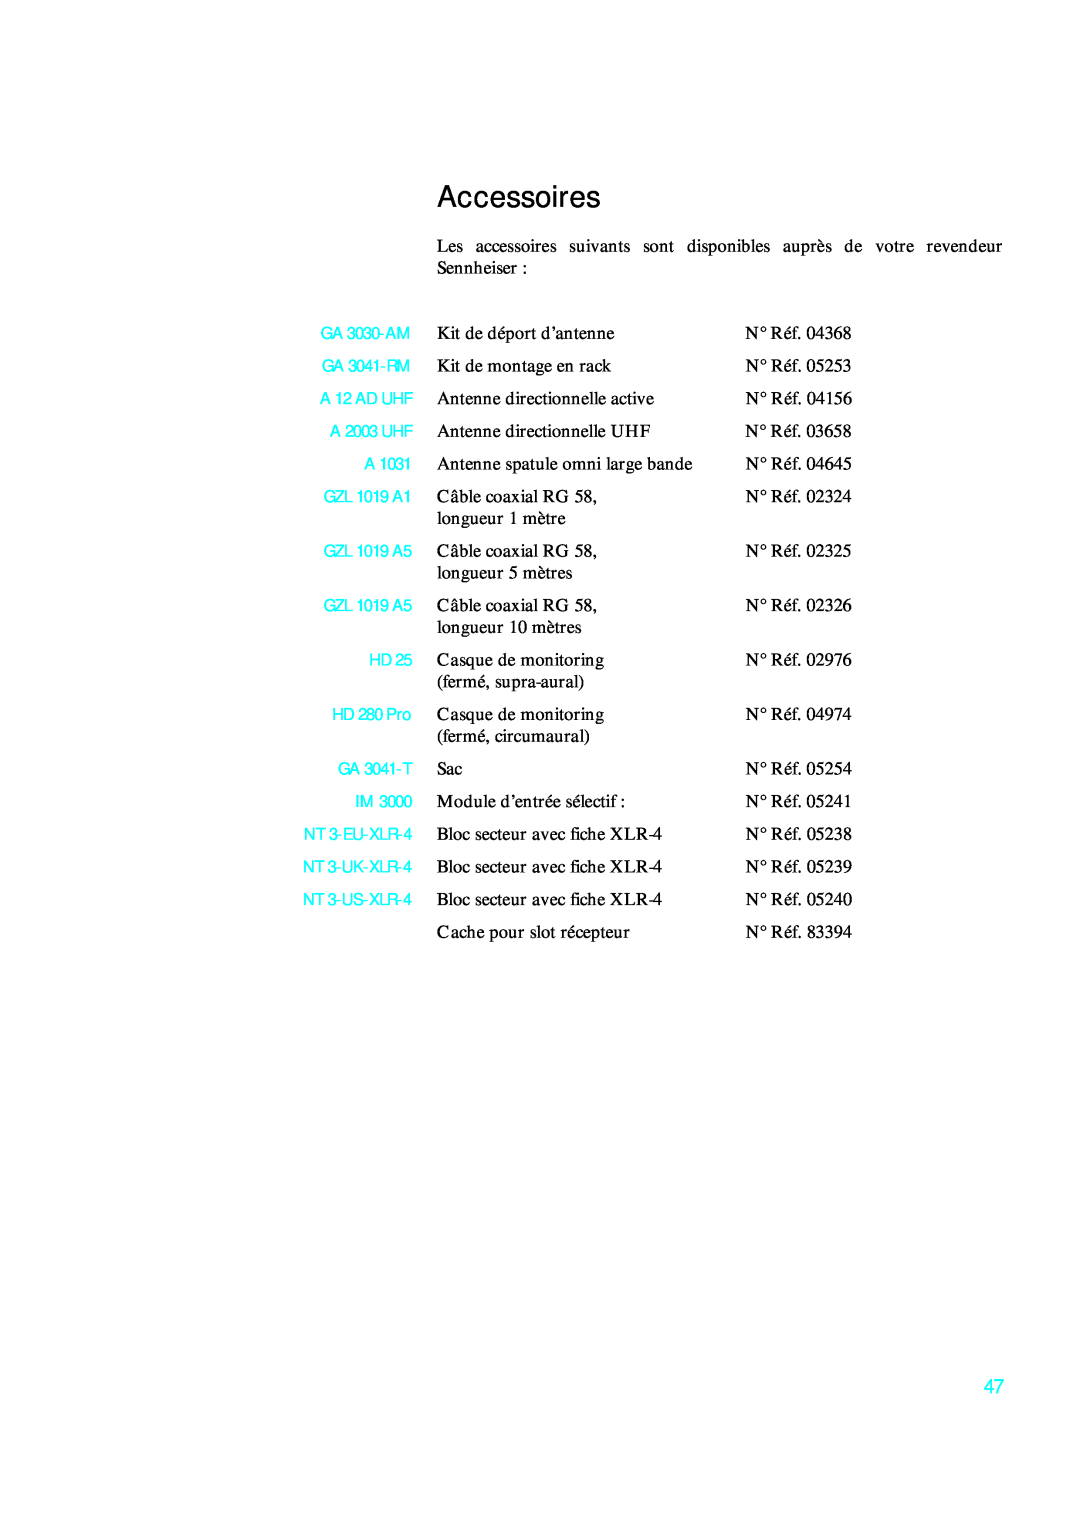 Sennheiser qp 3041 Accessoires, A 12 AD UHF, GZL 1019 A1, GZL 1019 A5, GA 3030-AM, GA 3041-RM, A 2003 UHF, HD 280 Pro 